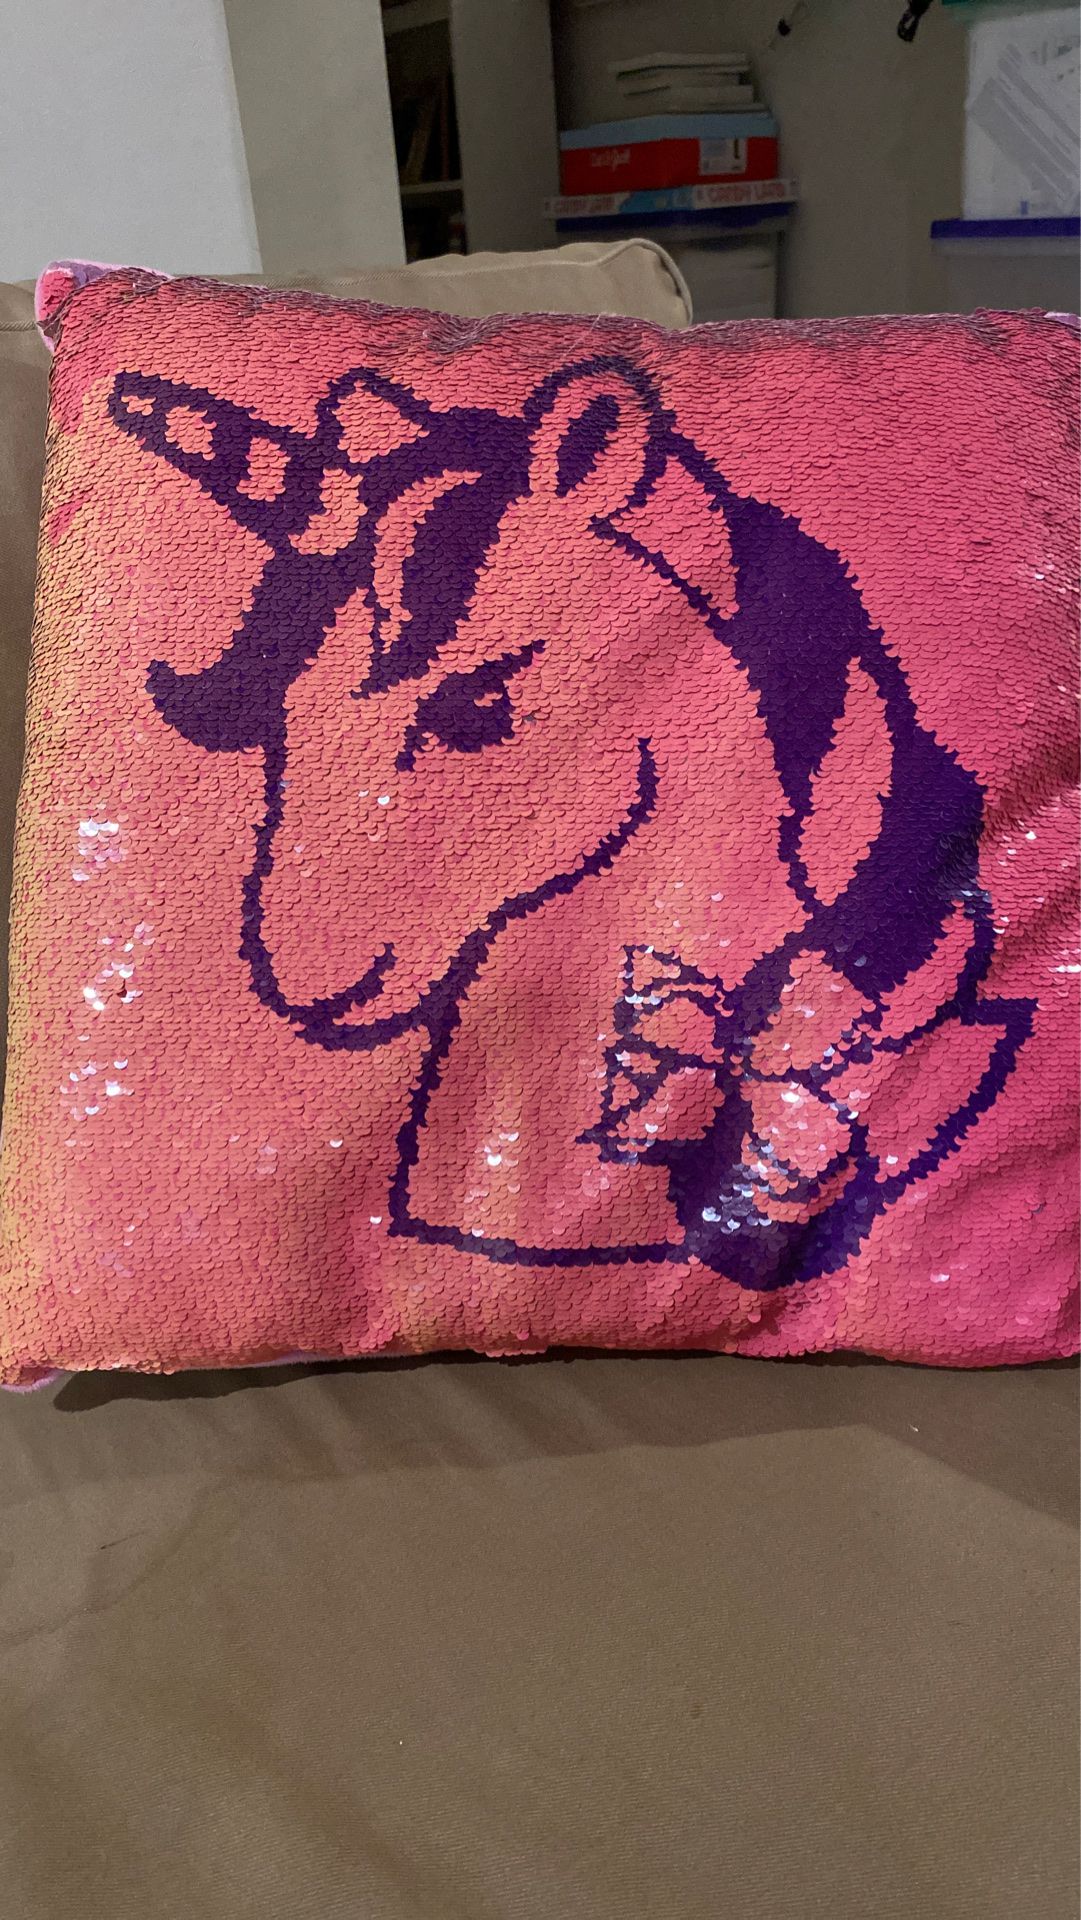 JoJo Siwa Unicorn pillow